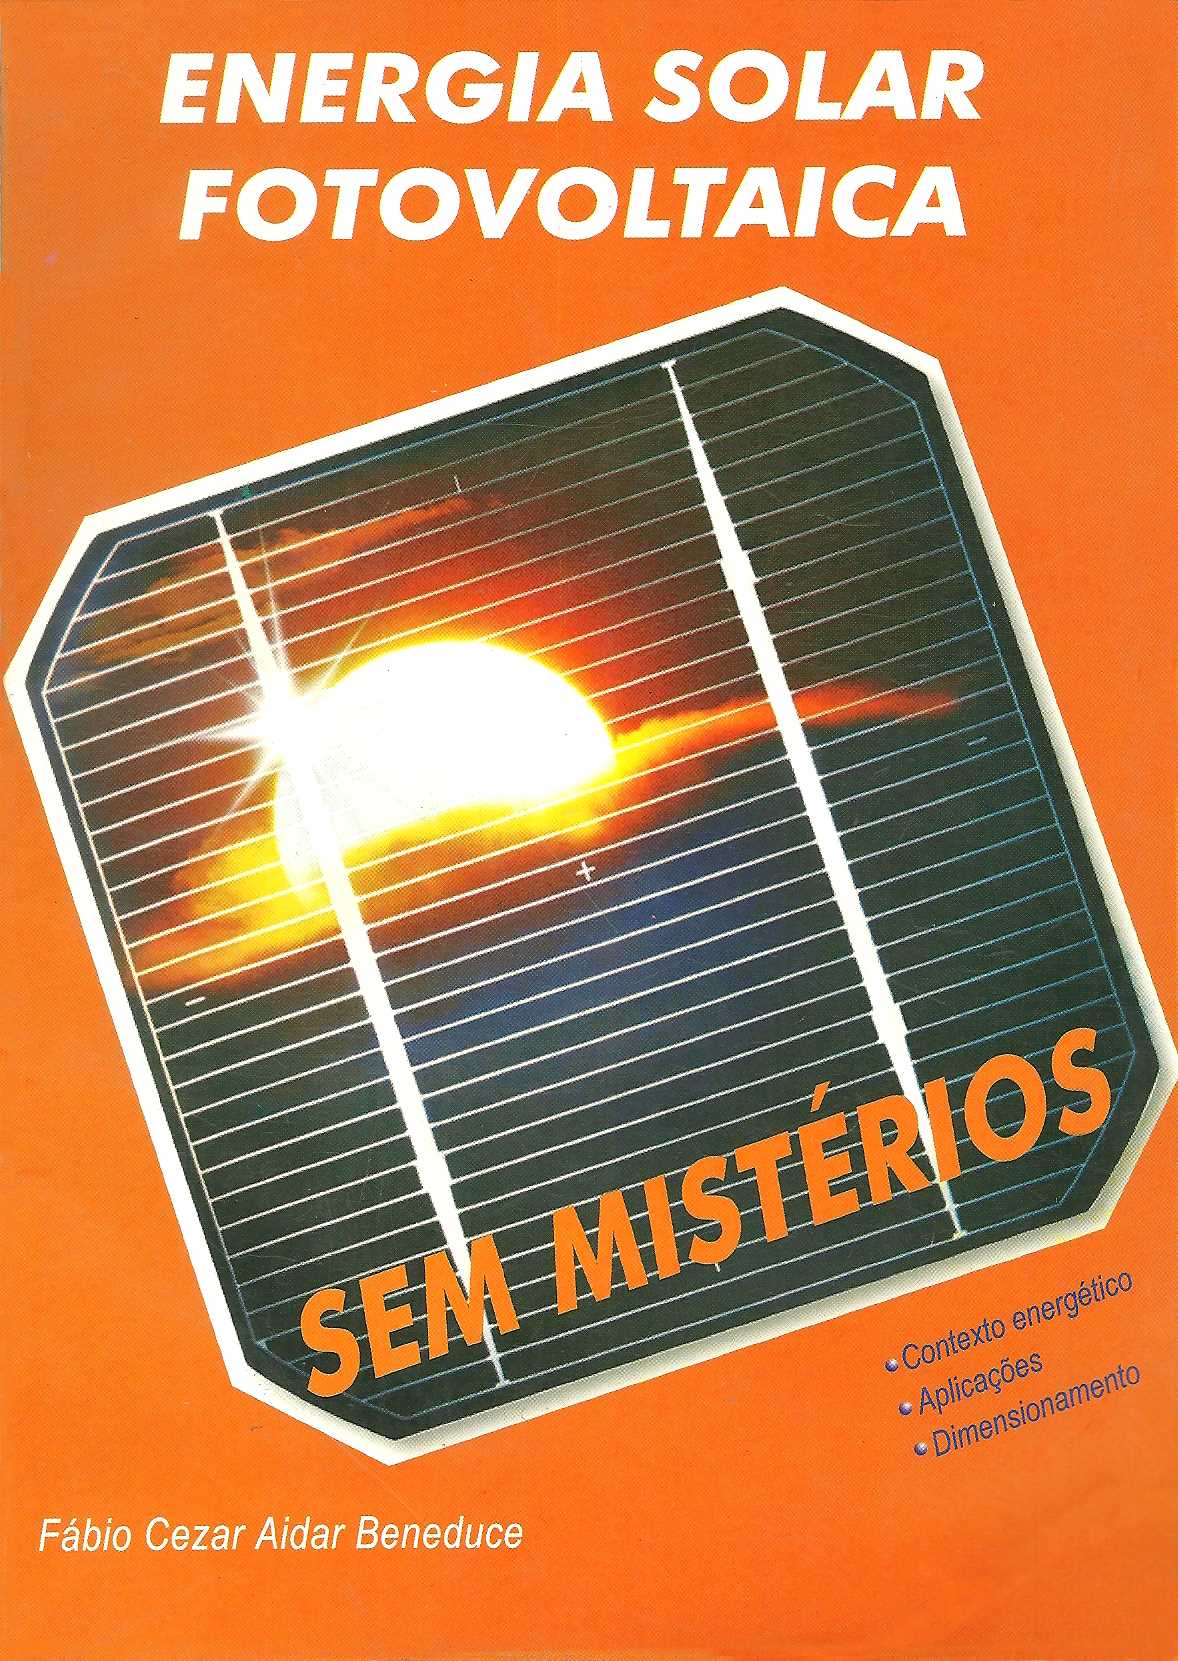 Capa do livro Energia solar fotovoltaica com uma placa na capa